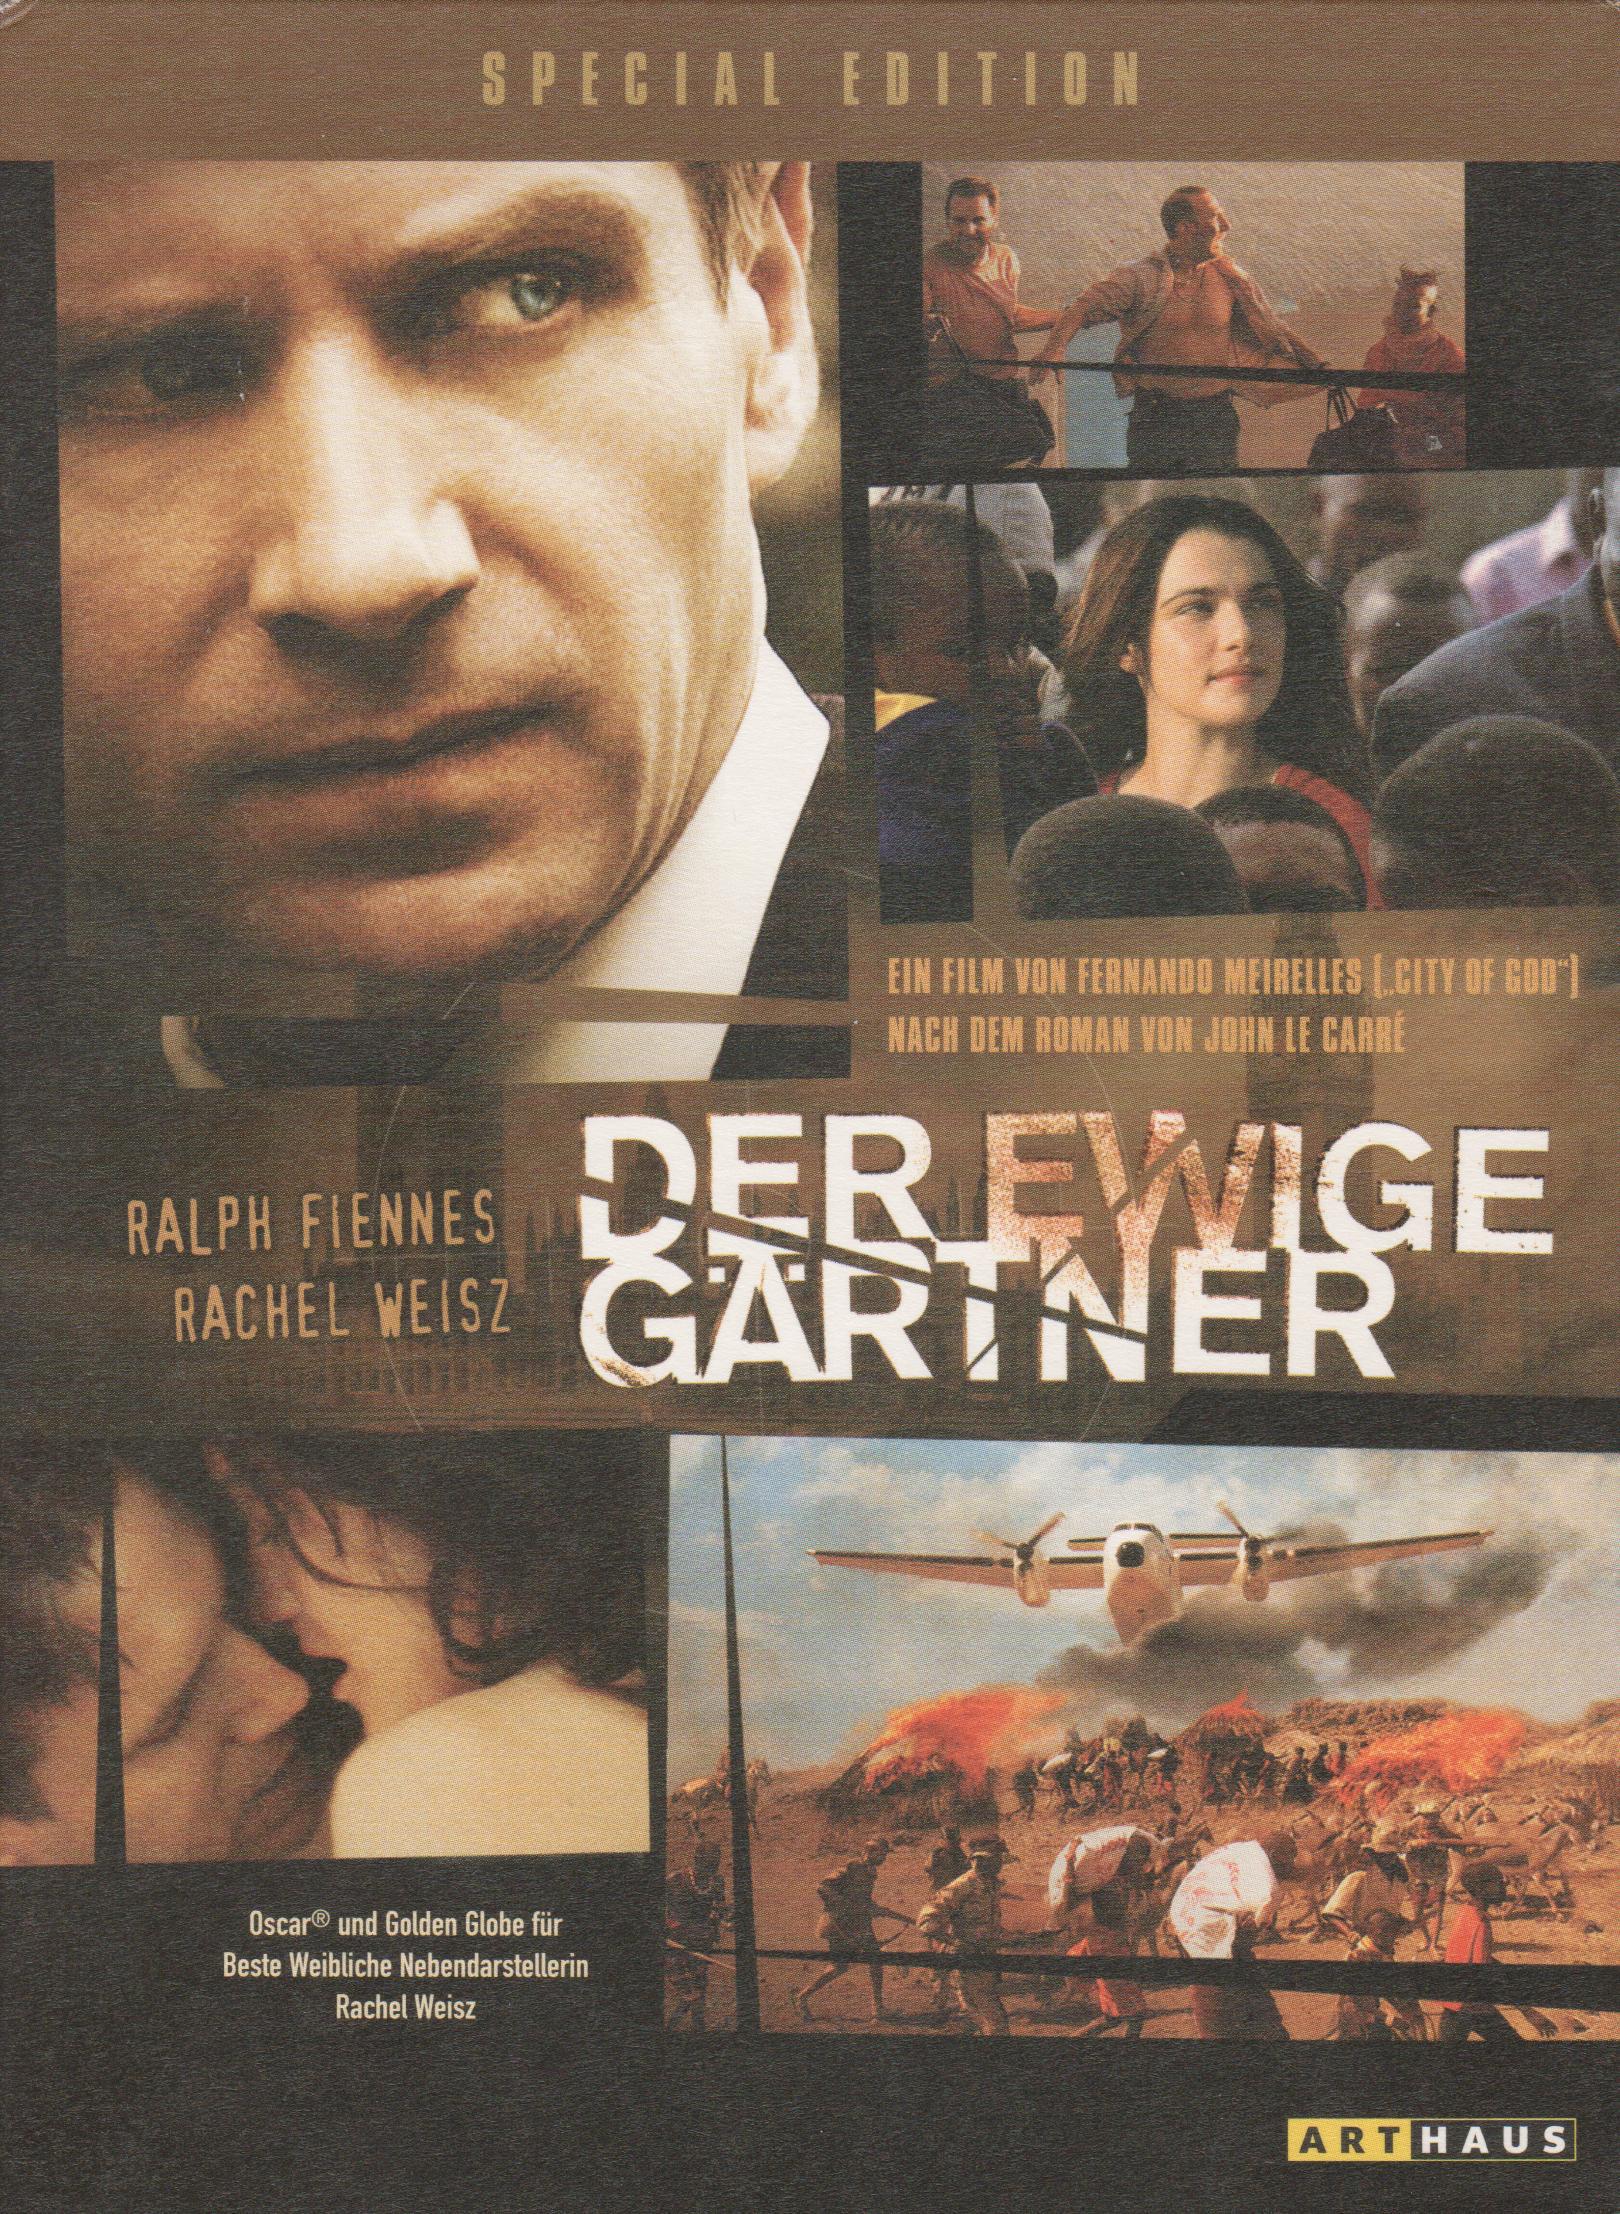 DVD-Cover "Der ewige Gärtner"